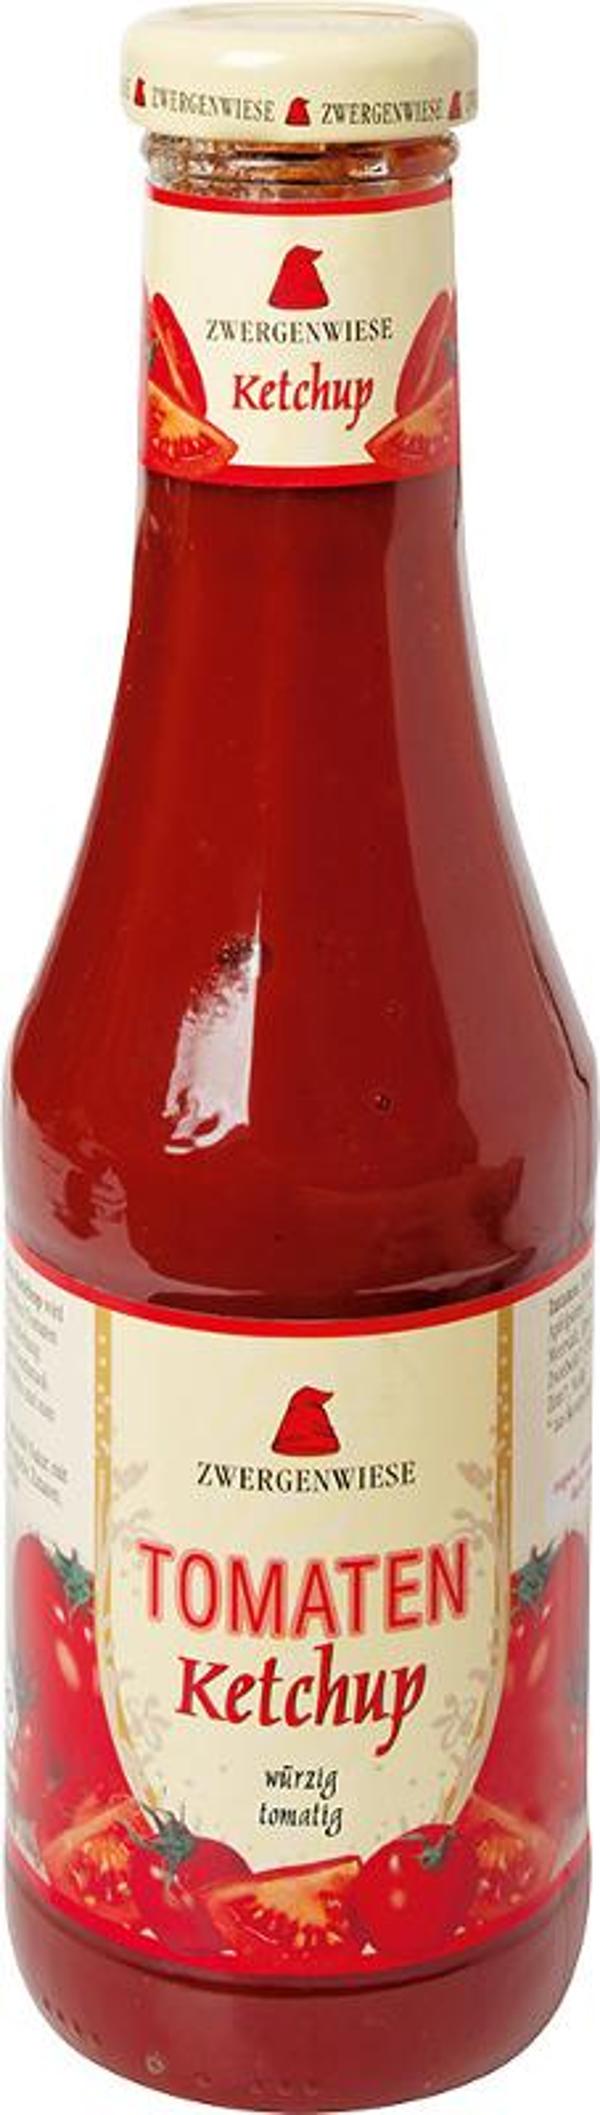 Produktfoto zu Zwergenwiese Tomaten Ketchup - 500ml